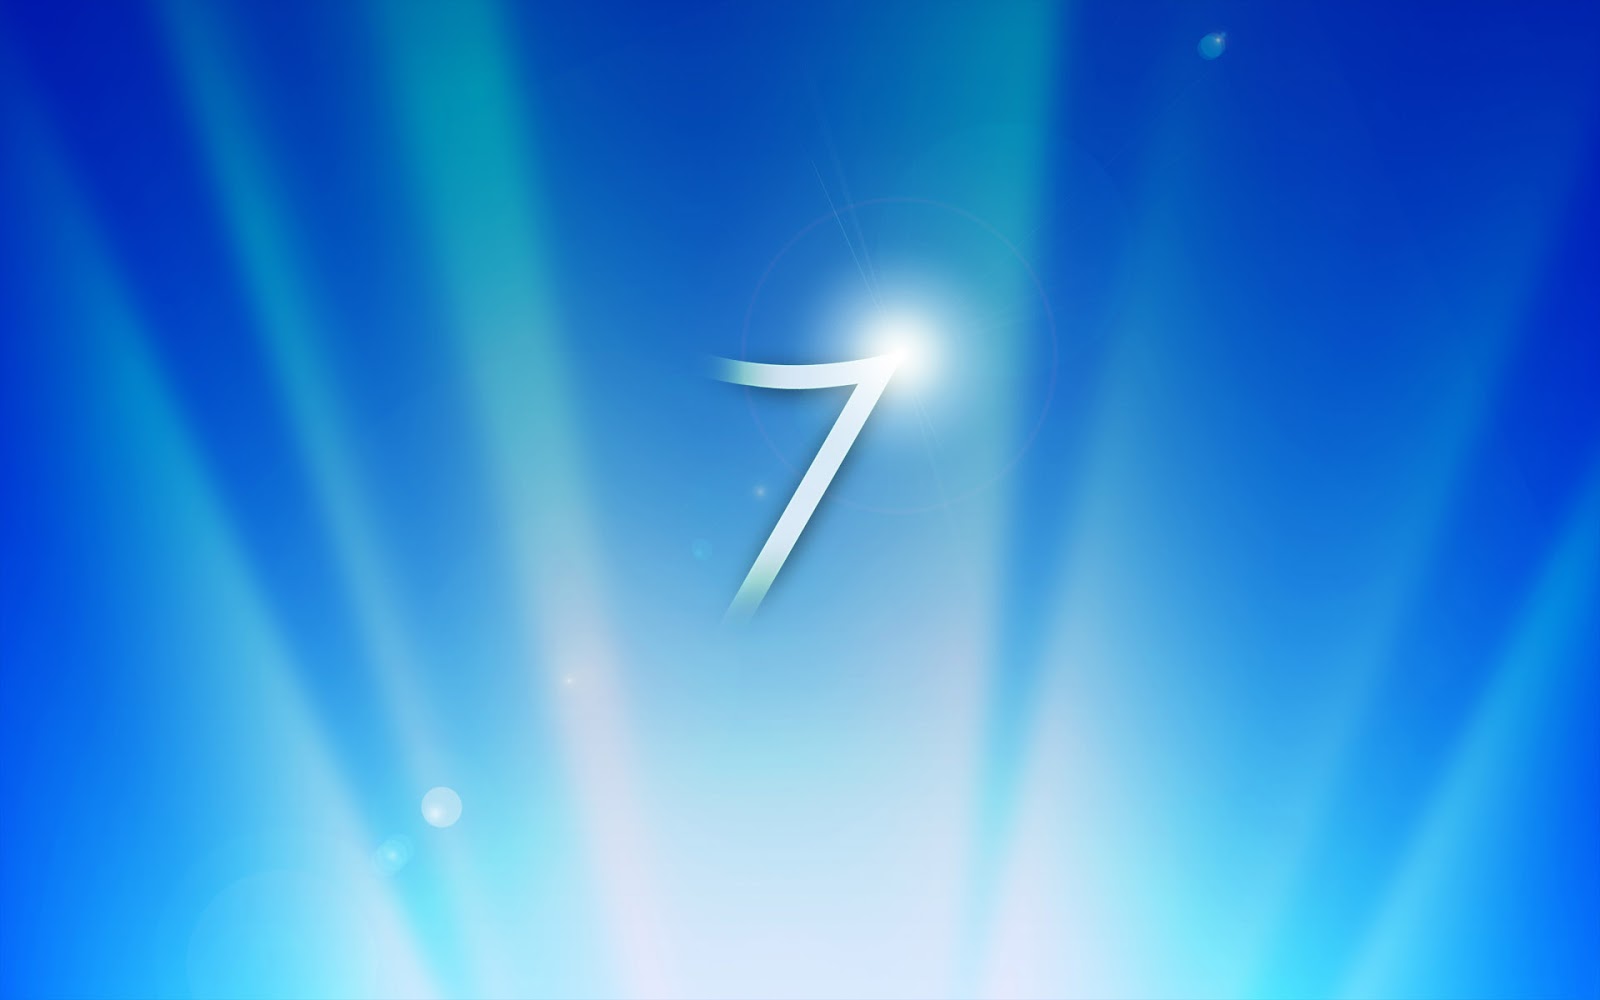 vijay fonds d'écran hd pour windows 7,bleu,jour,ciel,atmosphère,lumière